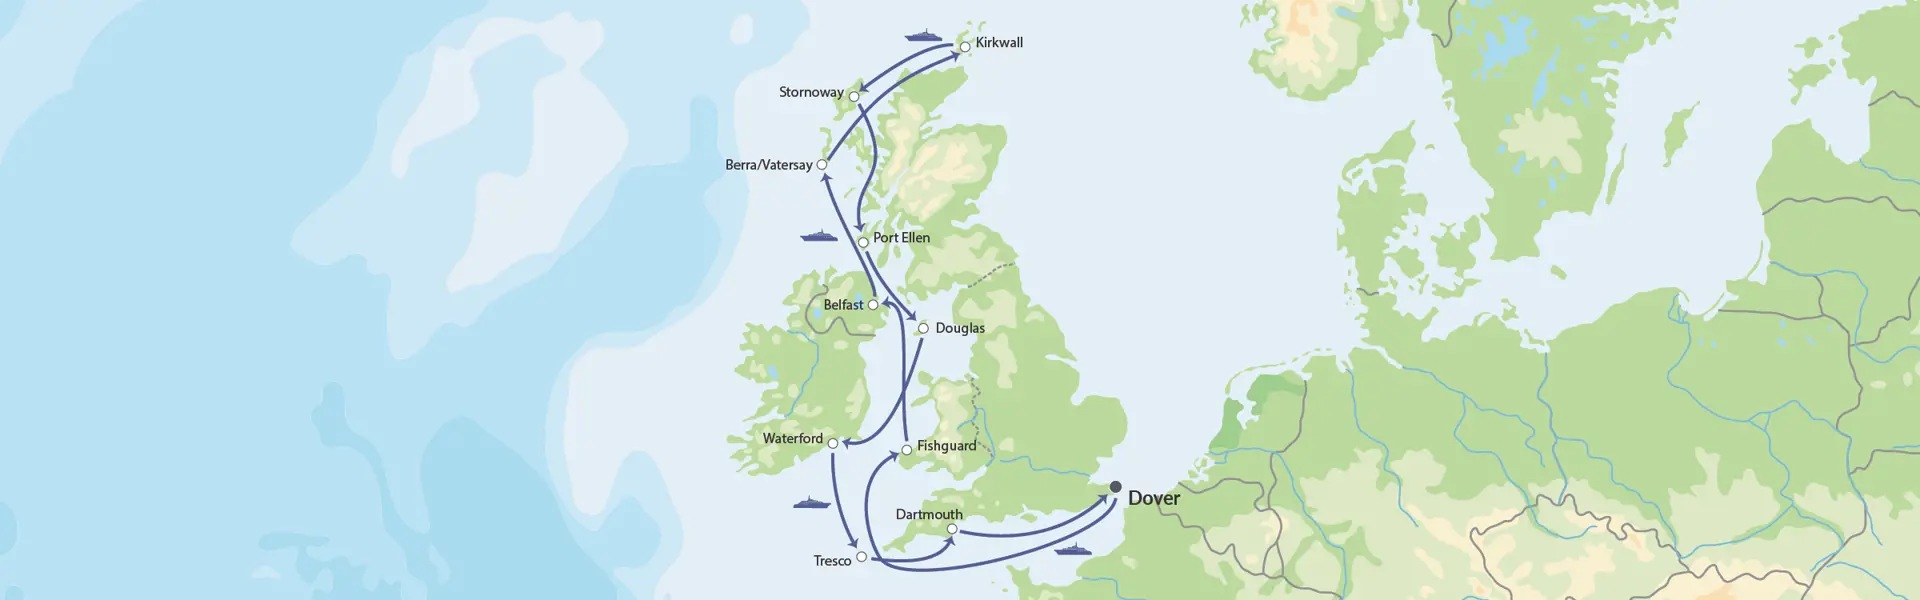 DK Hurtigruten Britiske Øer Map (1)